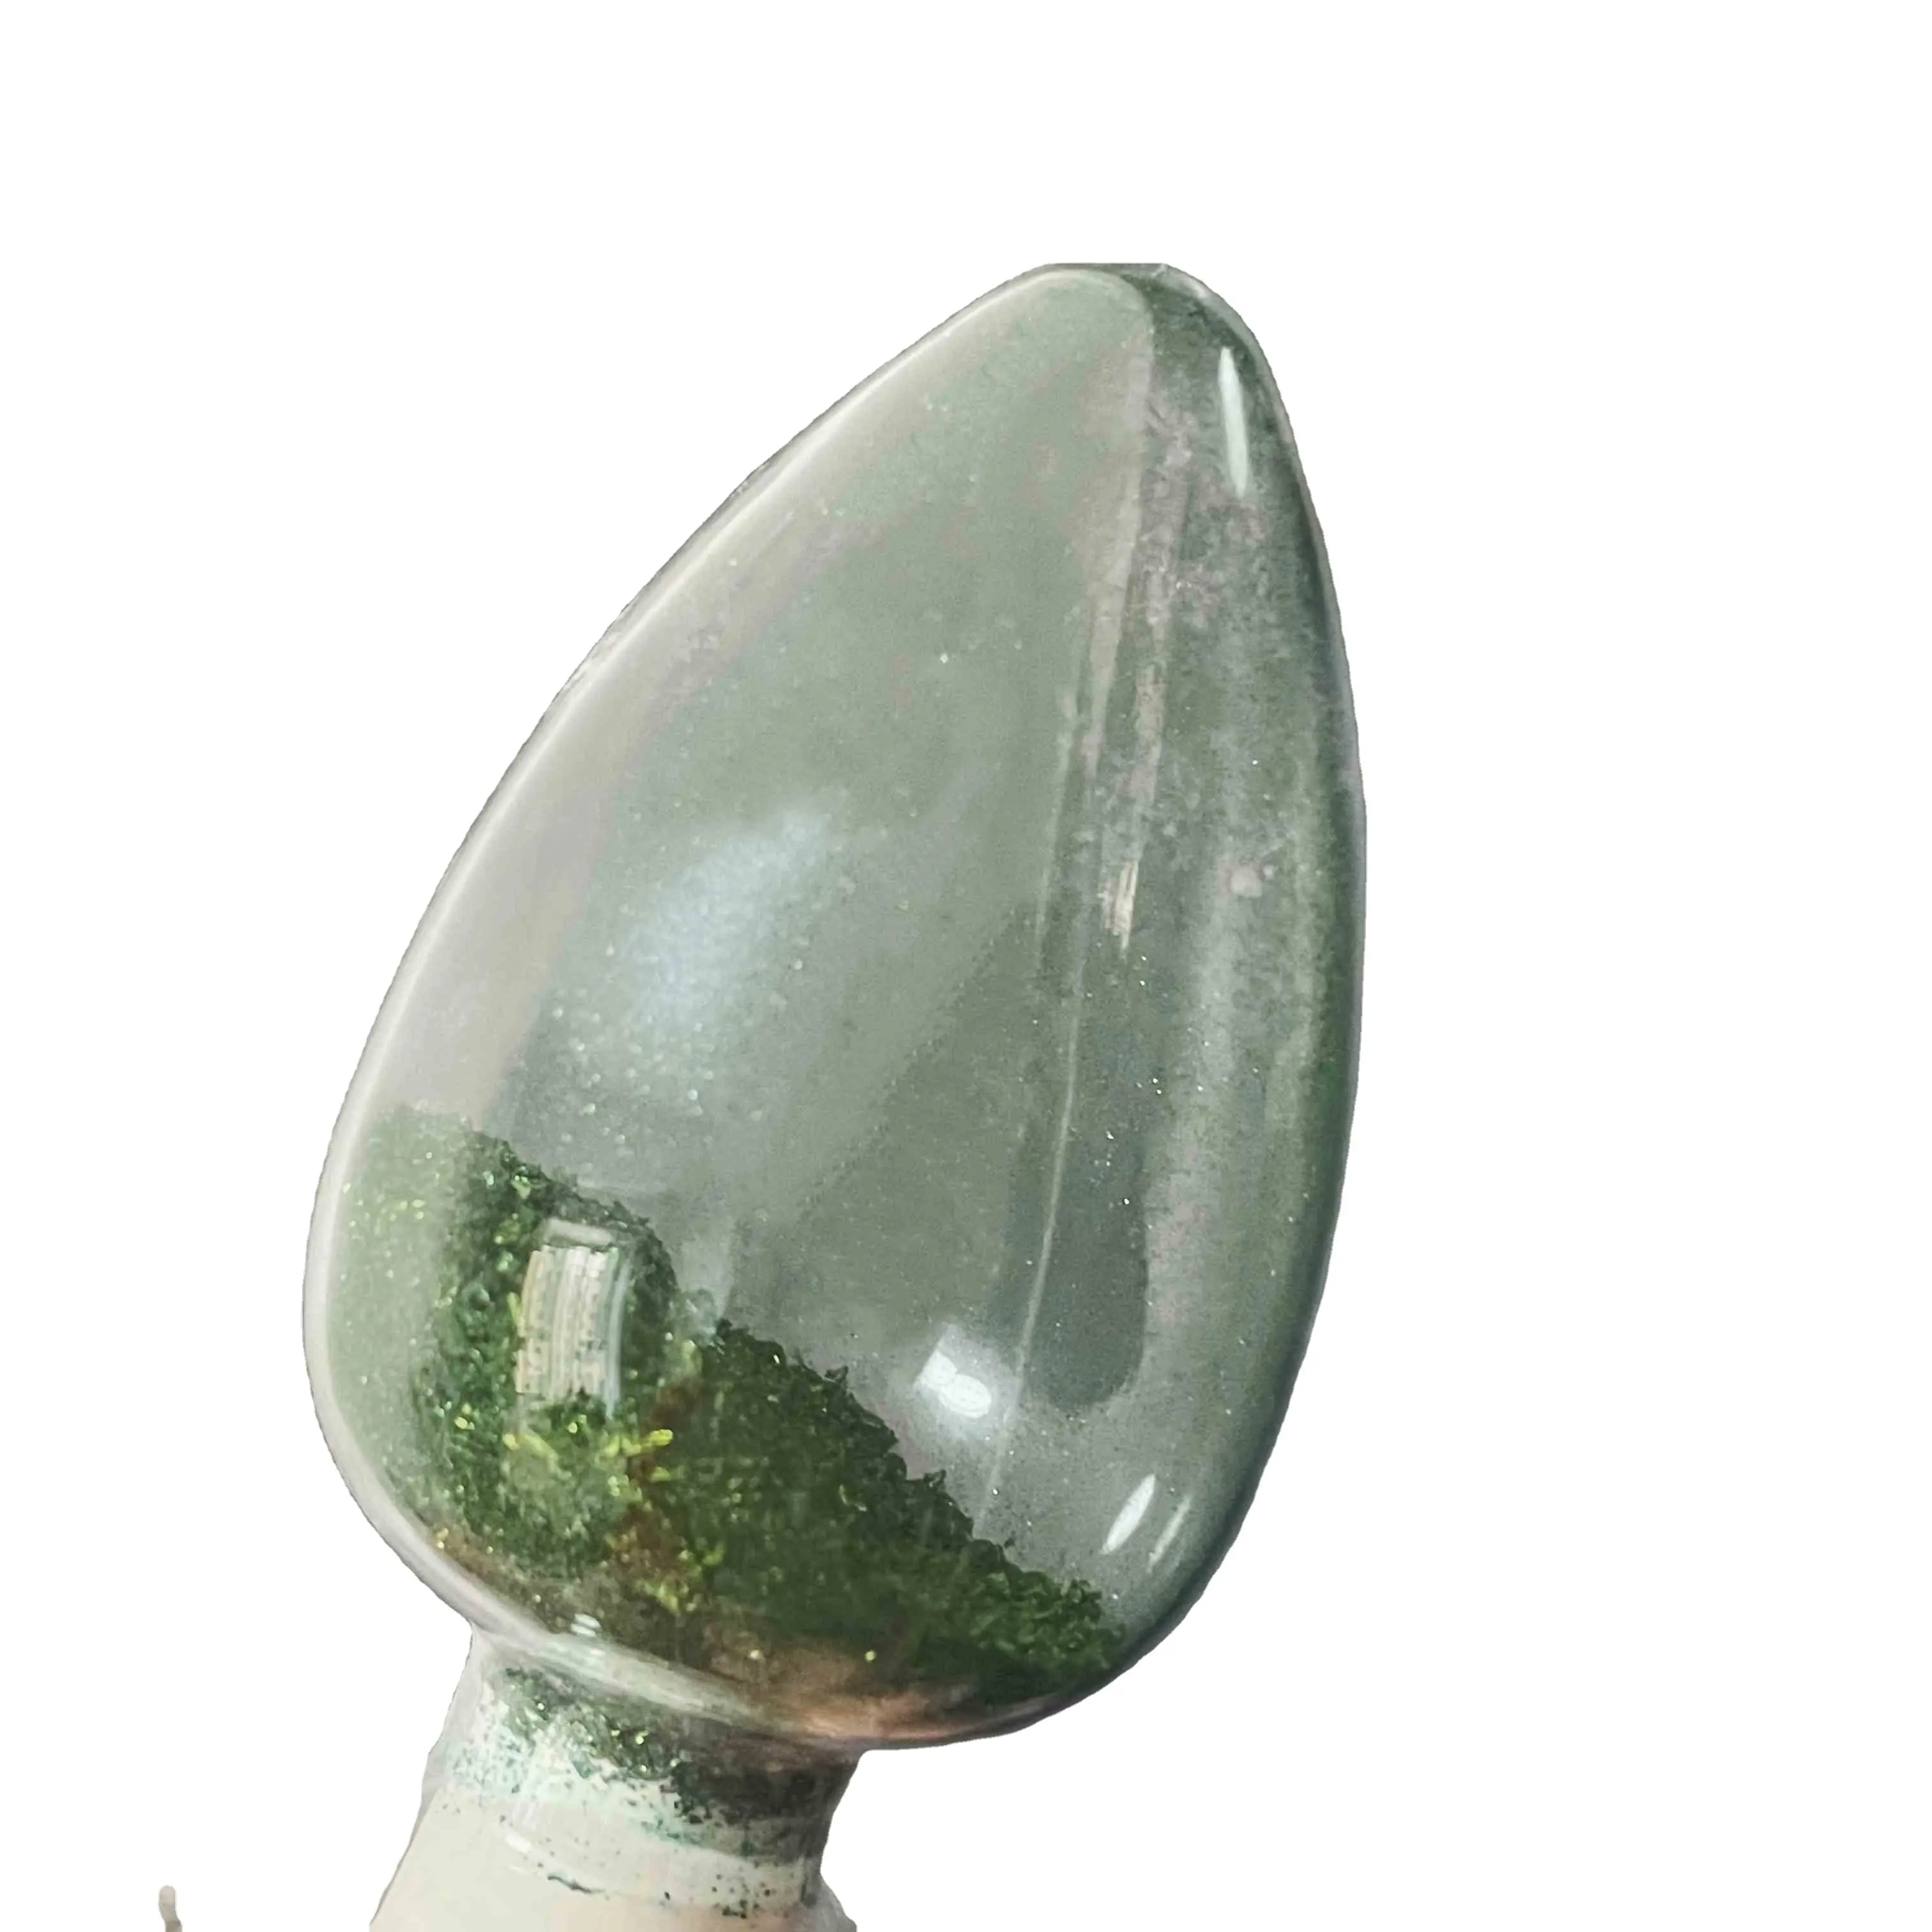 Chất lượng cao cơ bản thuốc nhuộm Malachite màu xanh lá cây chất lỏng G 4 cơ bản màu xanh lá cây 4 giá thấp CAS 14426